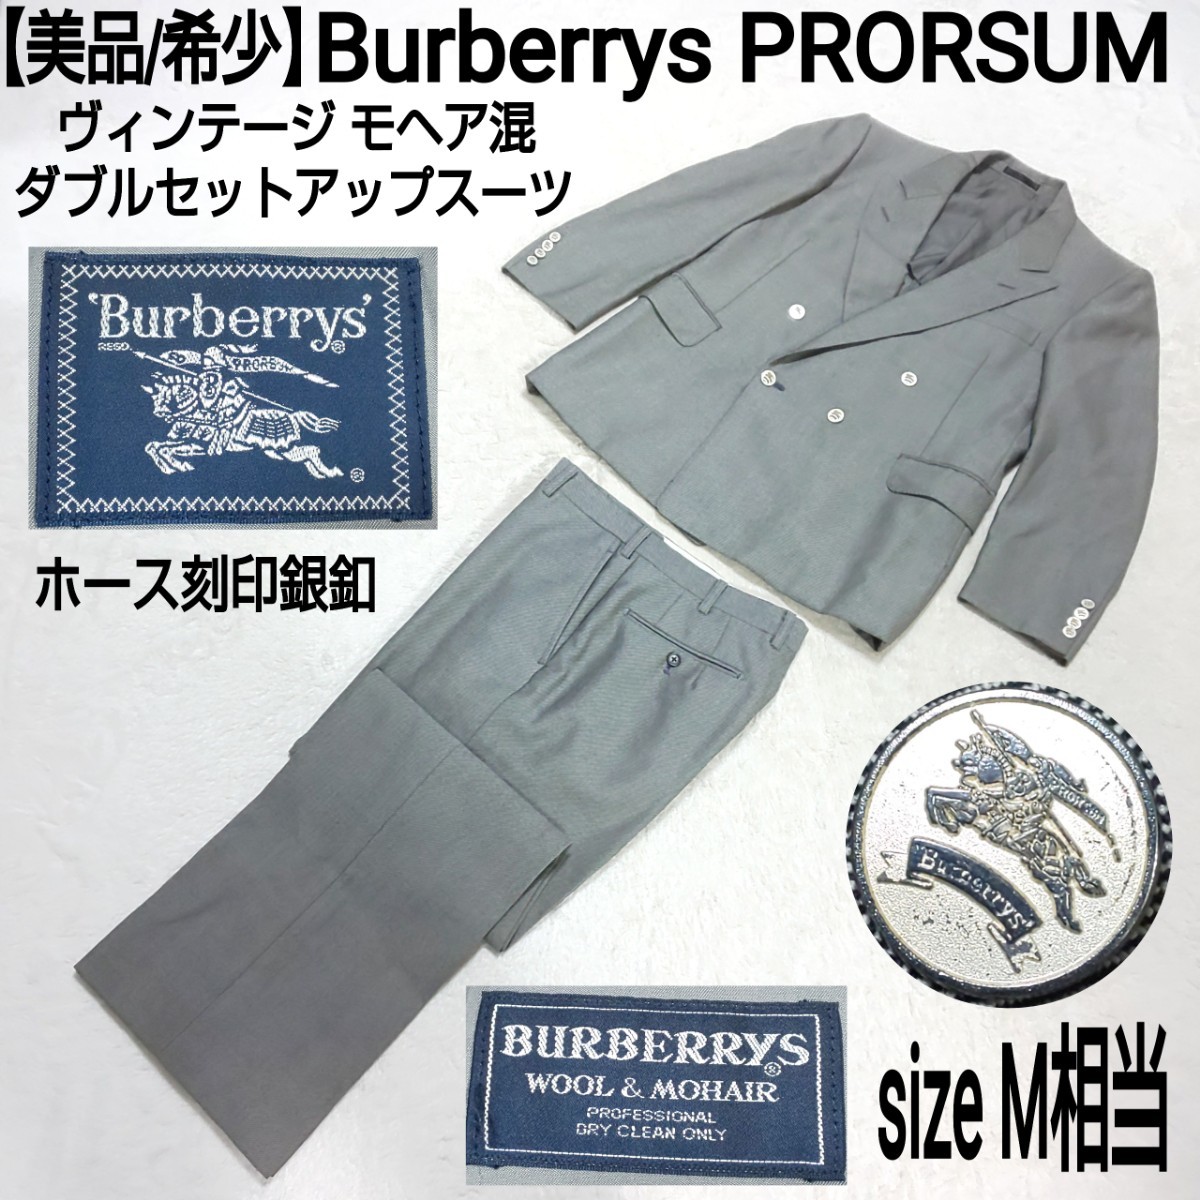 【美品/希少】Burberrys PRORSUM ヴィンテージ モヘア混ダブルセットアップスーツ(M) ダブルジャケット ノータックパンツ ホース刻印銀釦